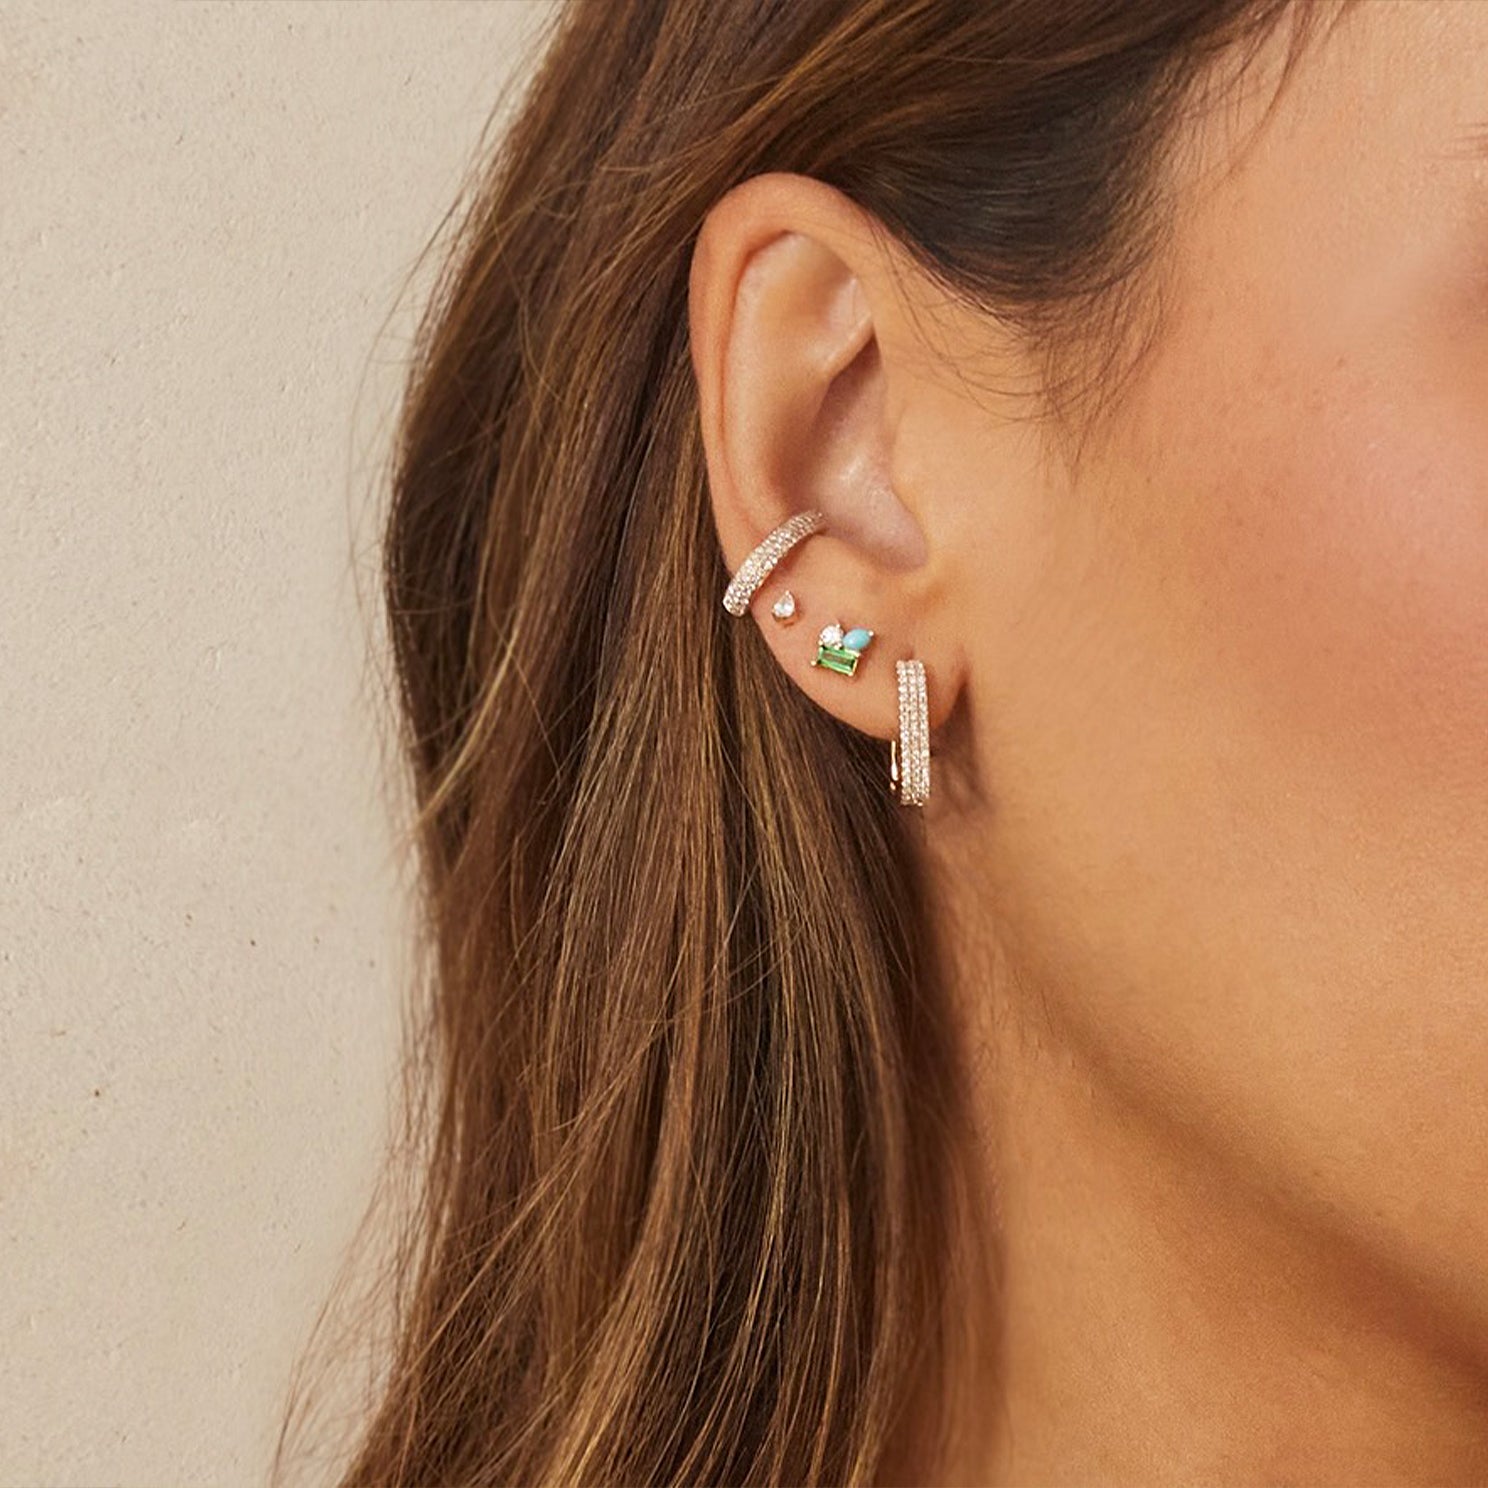 Triple Diamond Ear Cuff in 14k yellow gold styled on ear of model next to three earrings